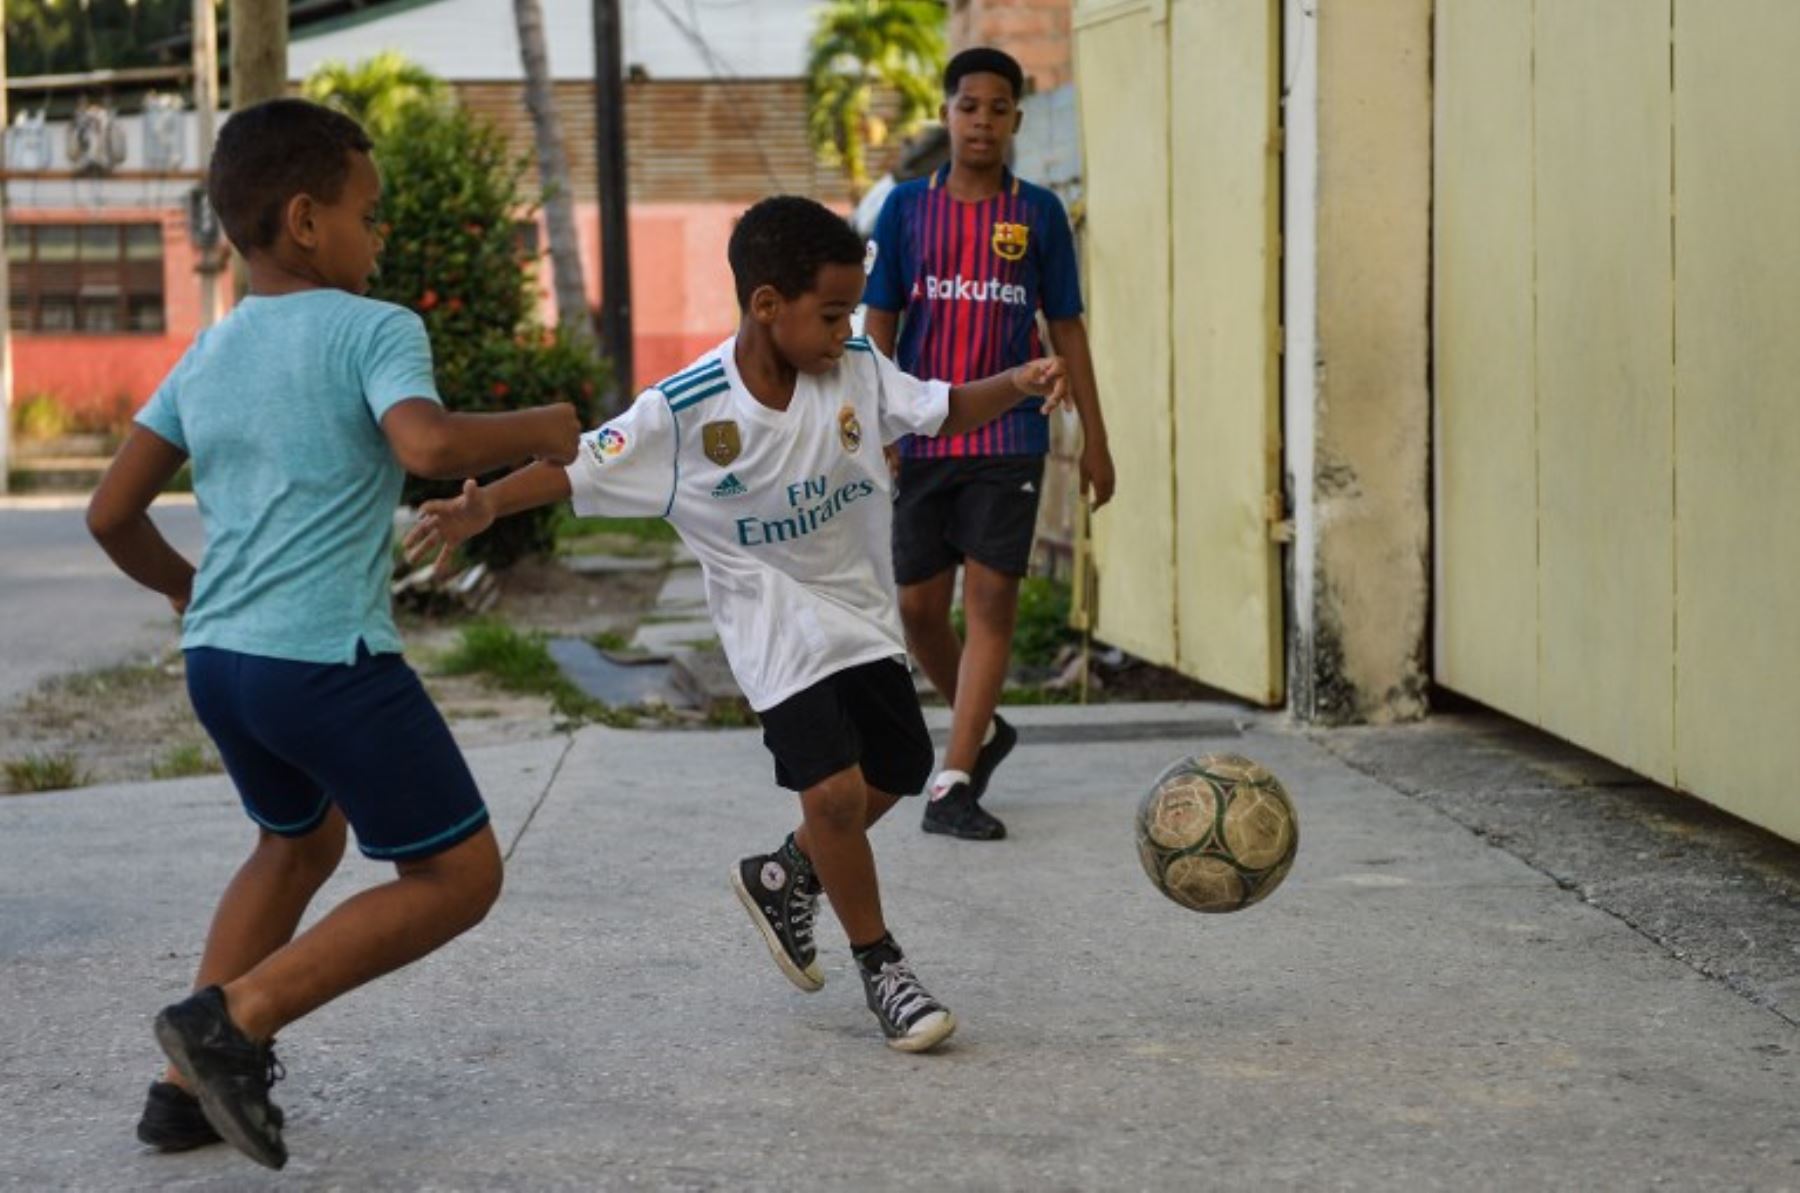 Los niños y jóvenes lanzan sus preferencias por el fútbol y los principales clubes del mundo